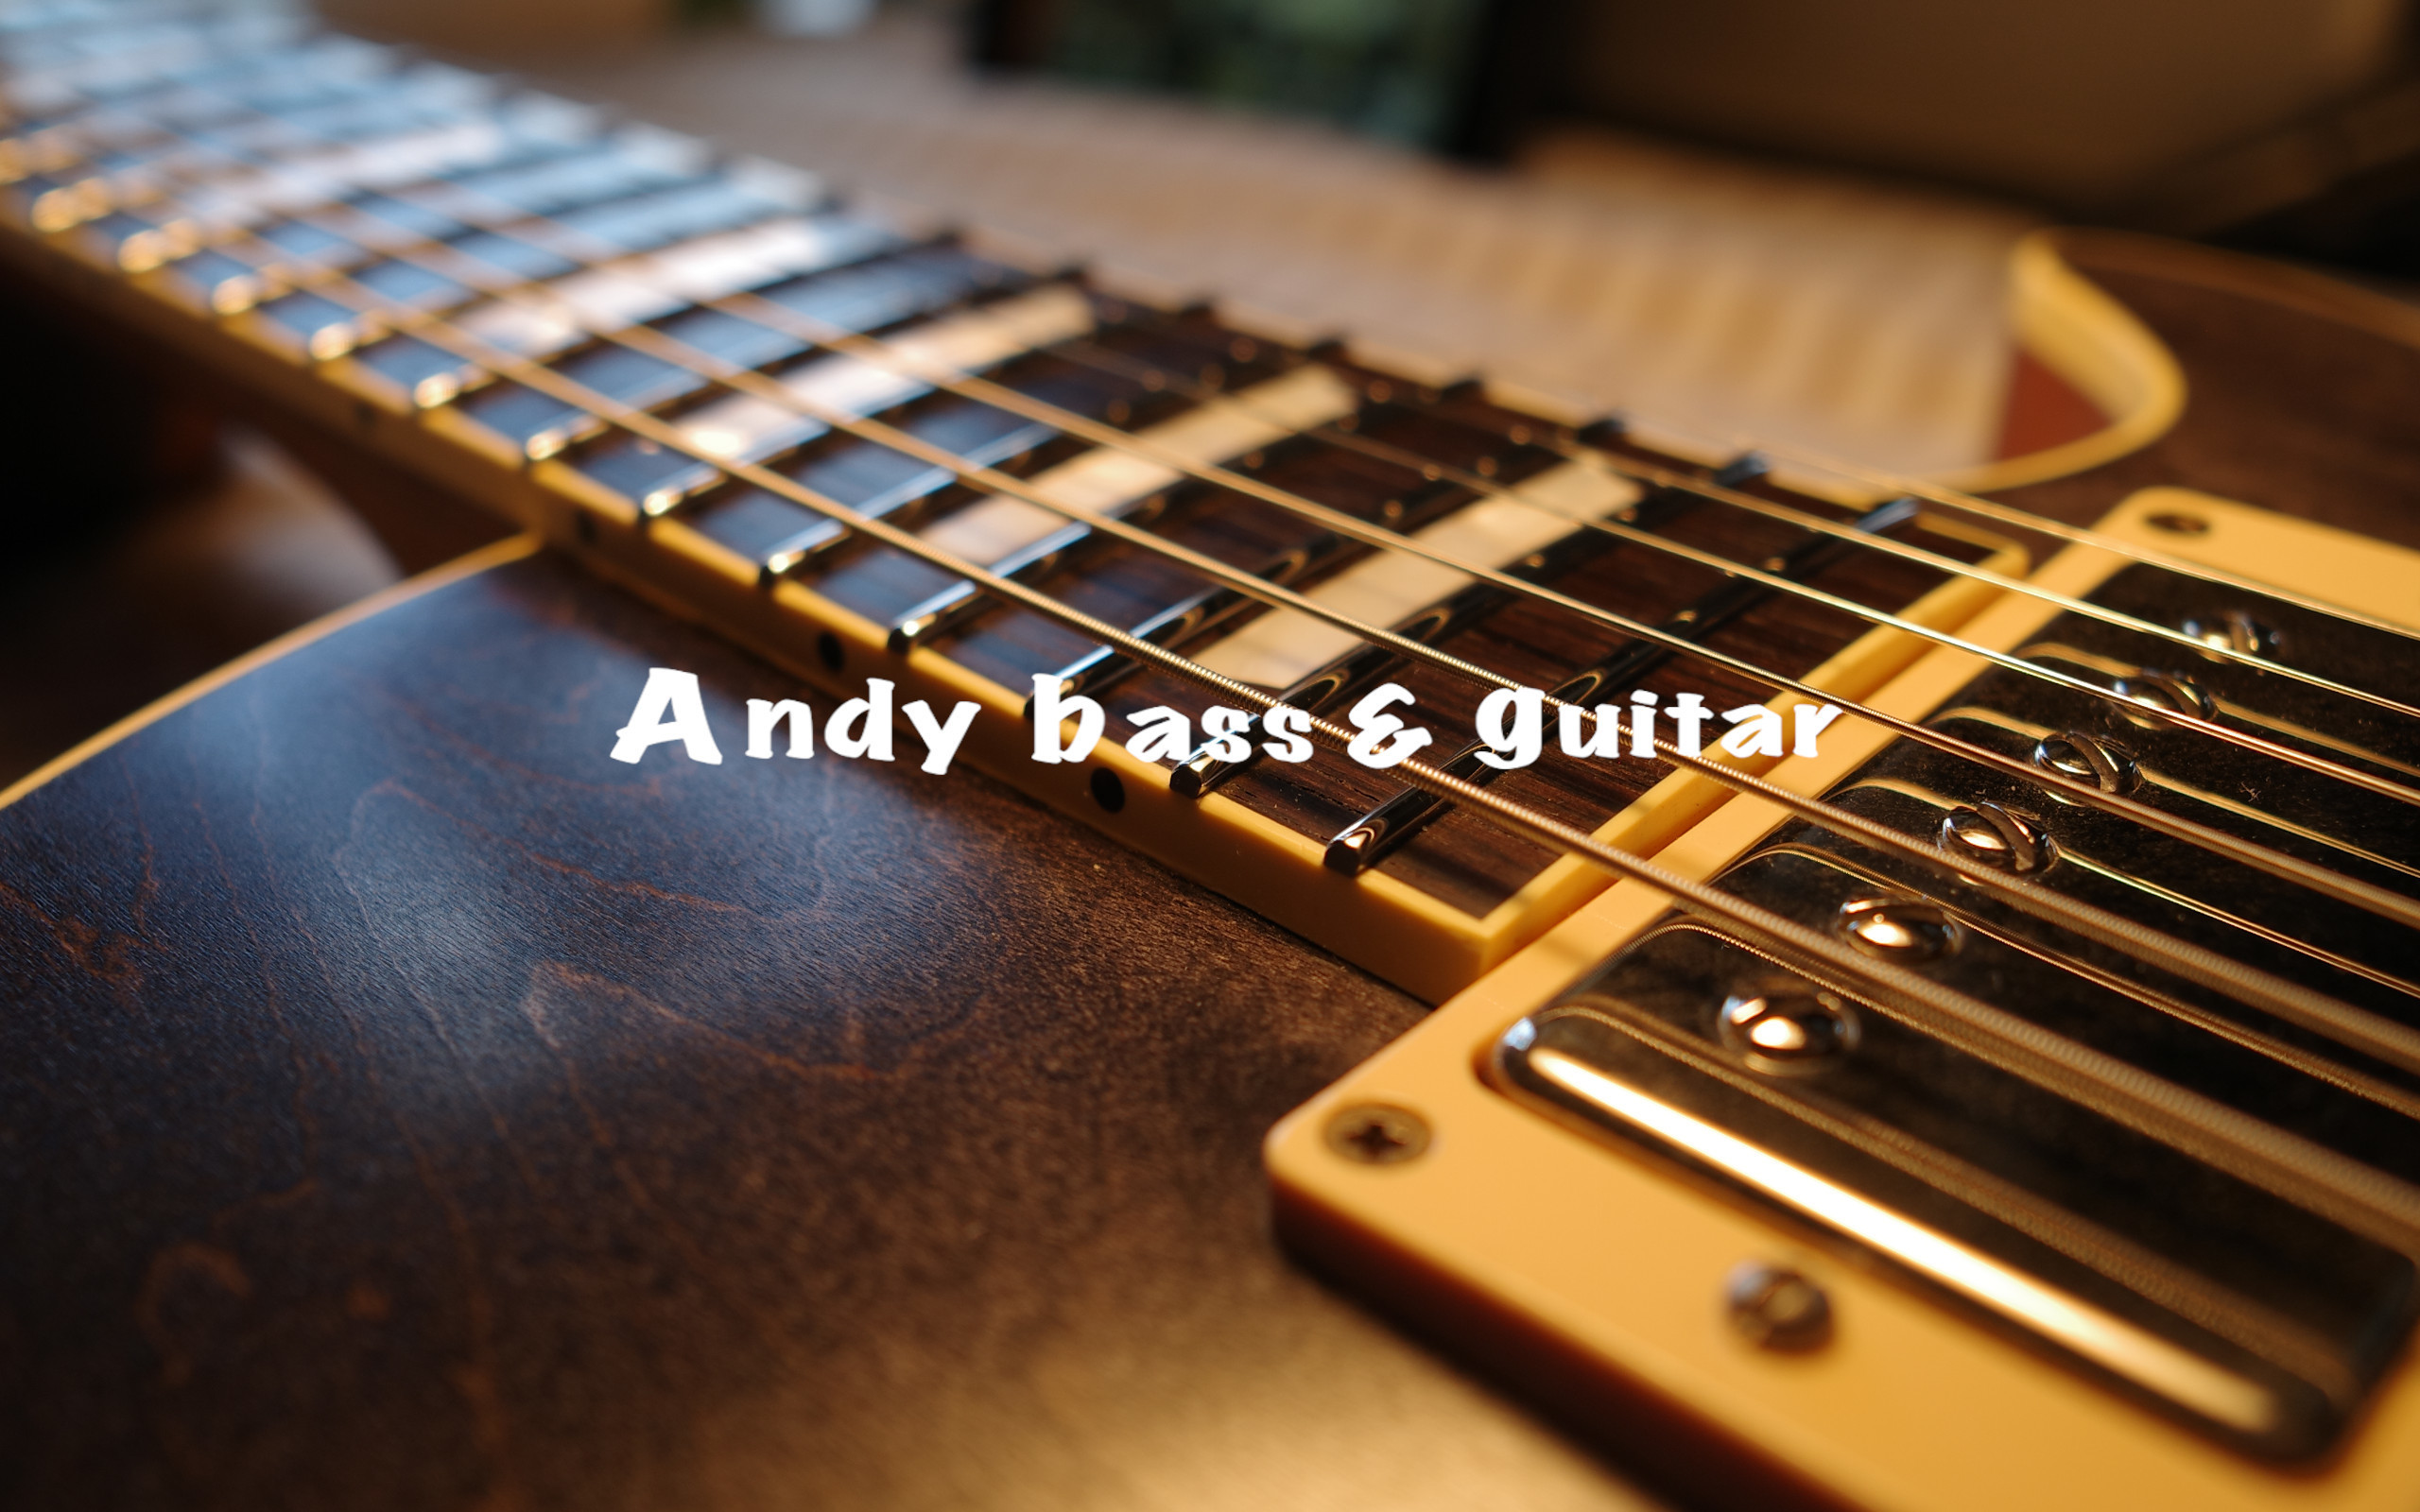 Andy bass&guitar